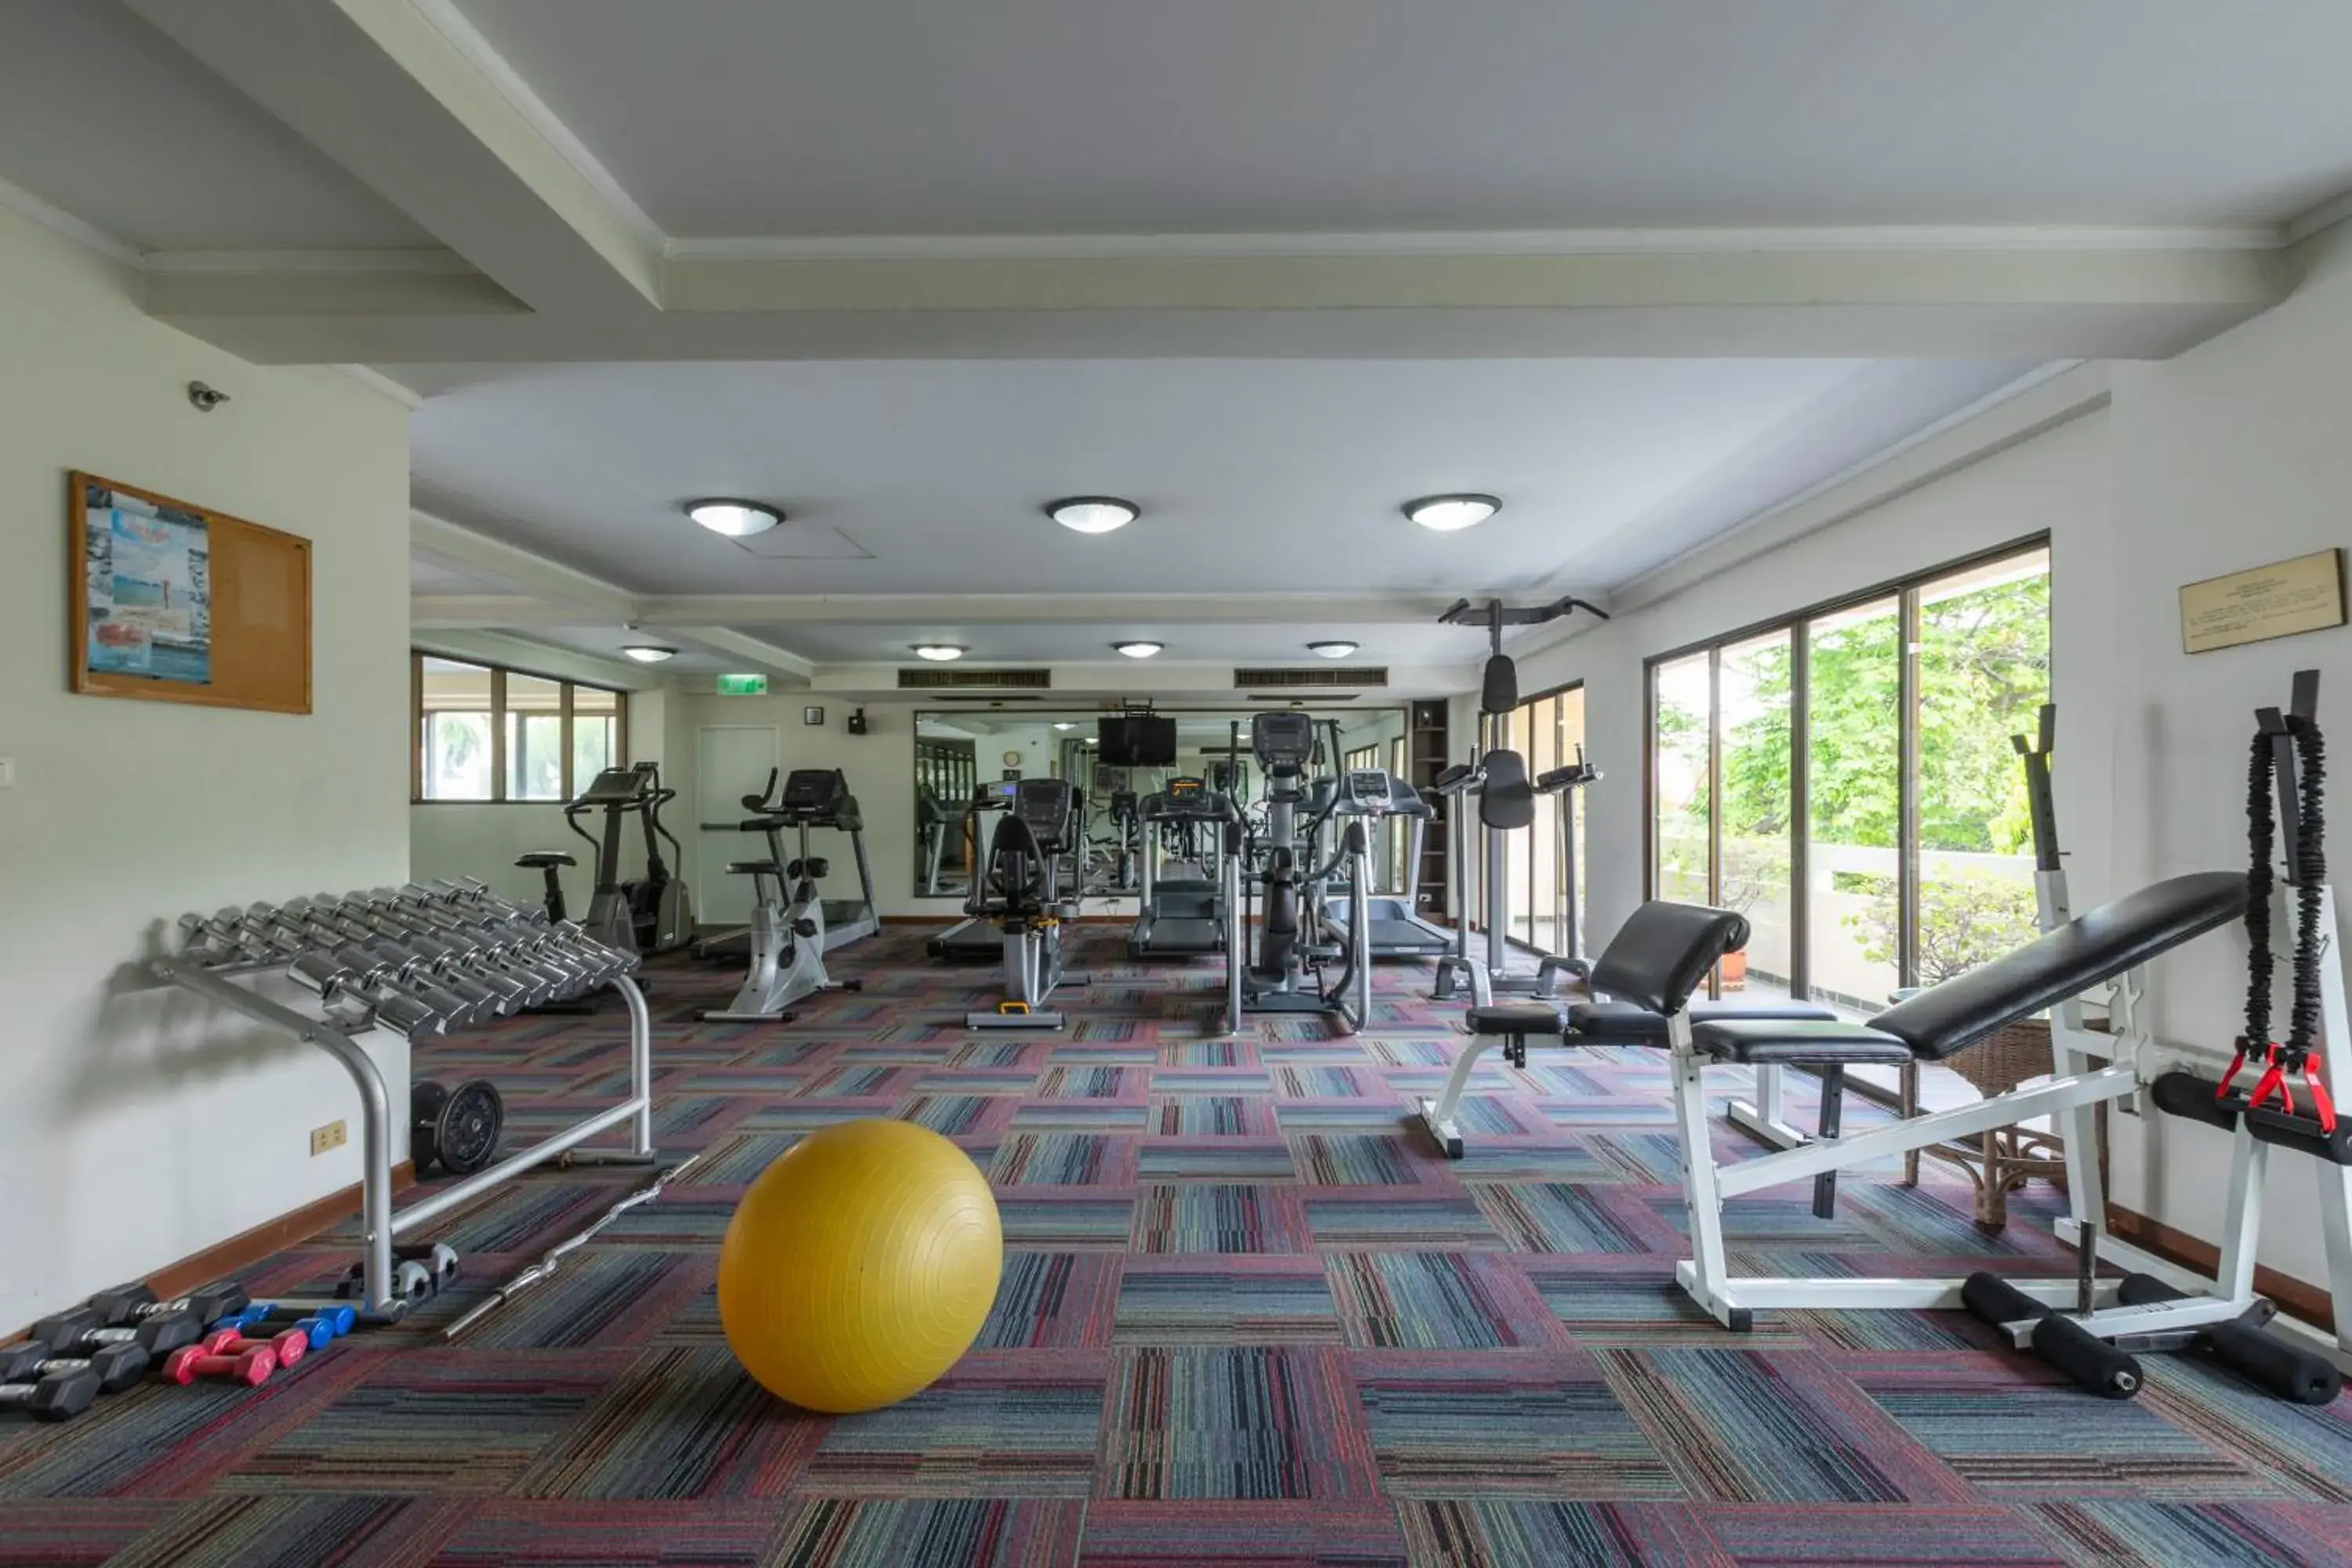 Fitness centre/facilities, Fitness Center/Facilities in Kantary House Ramkamhaeng Hotel